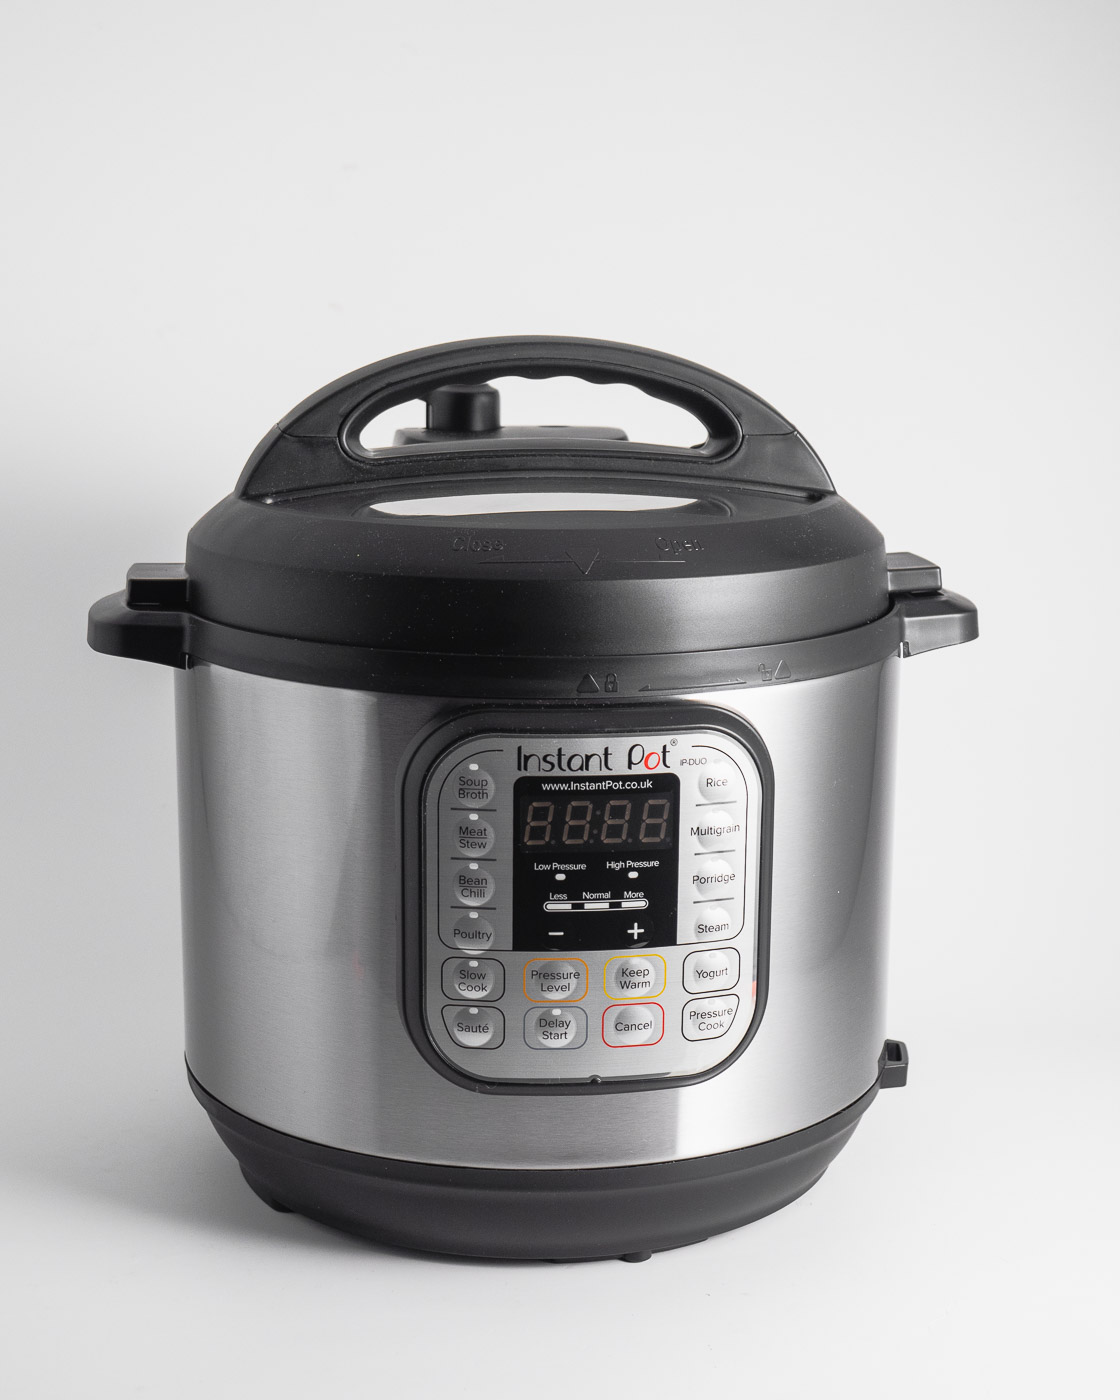 13 One-Touch-Programme Joghurtbereiter und Wärmer Dampfgarer Reiskocher Slow Cooker Instant Pot Duo Plus Mini 9-in-1-Schnellkochtopf Saute 3 l